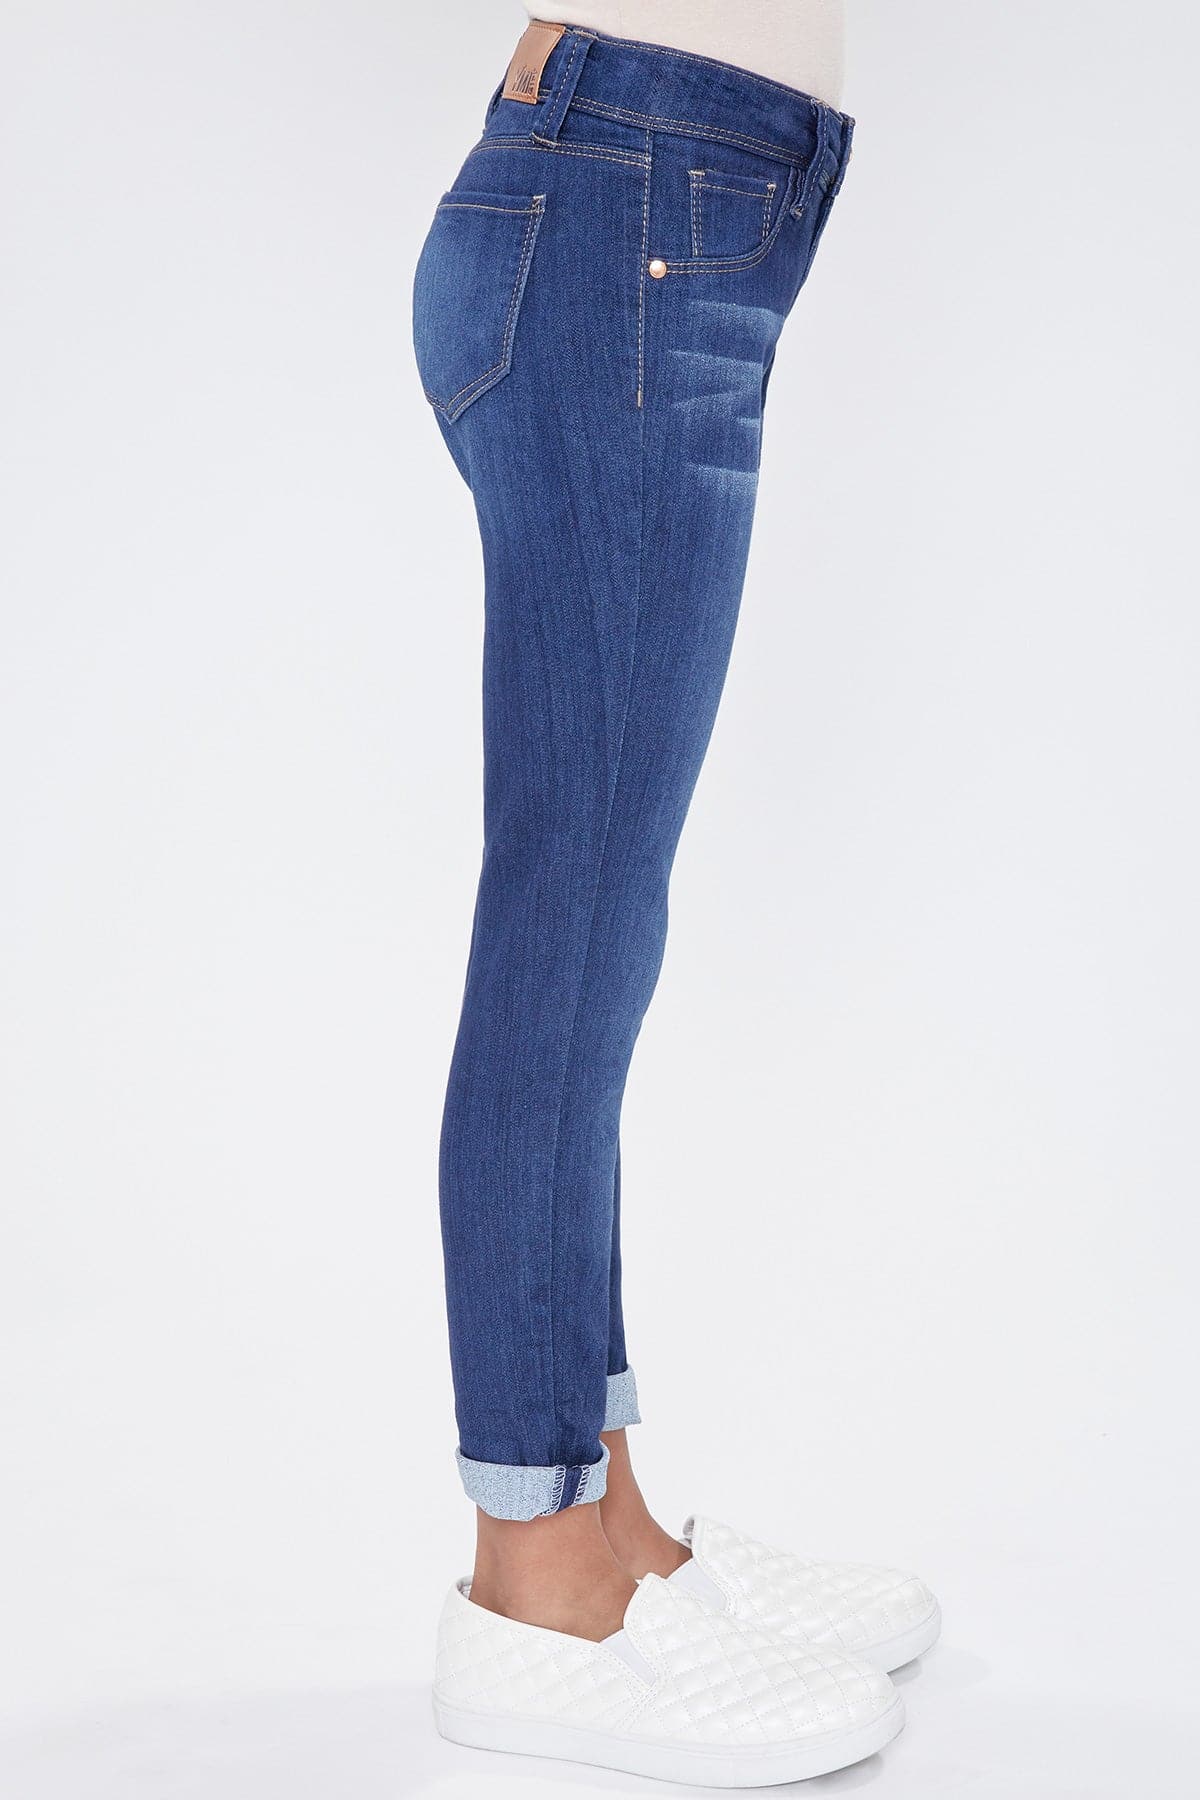 Girls Optional Cuff Denim Skinny Jeans from YMI – YMI JEANS